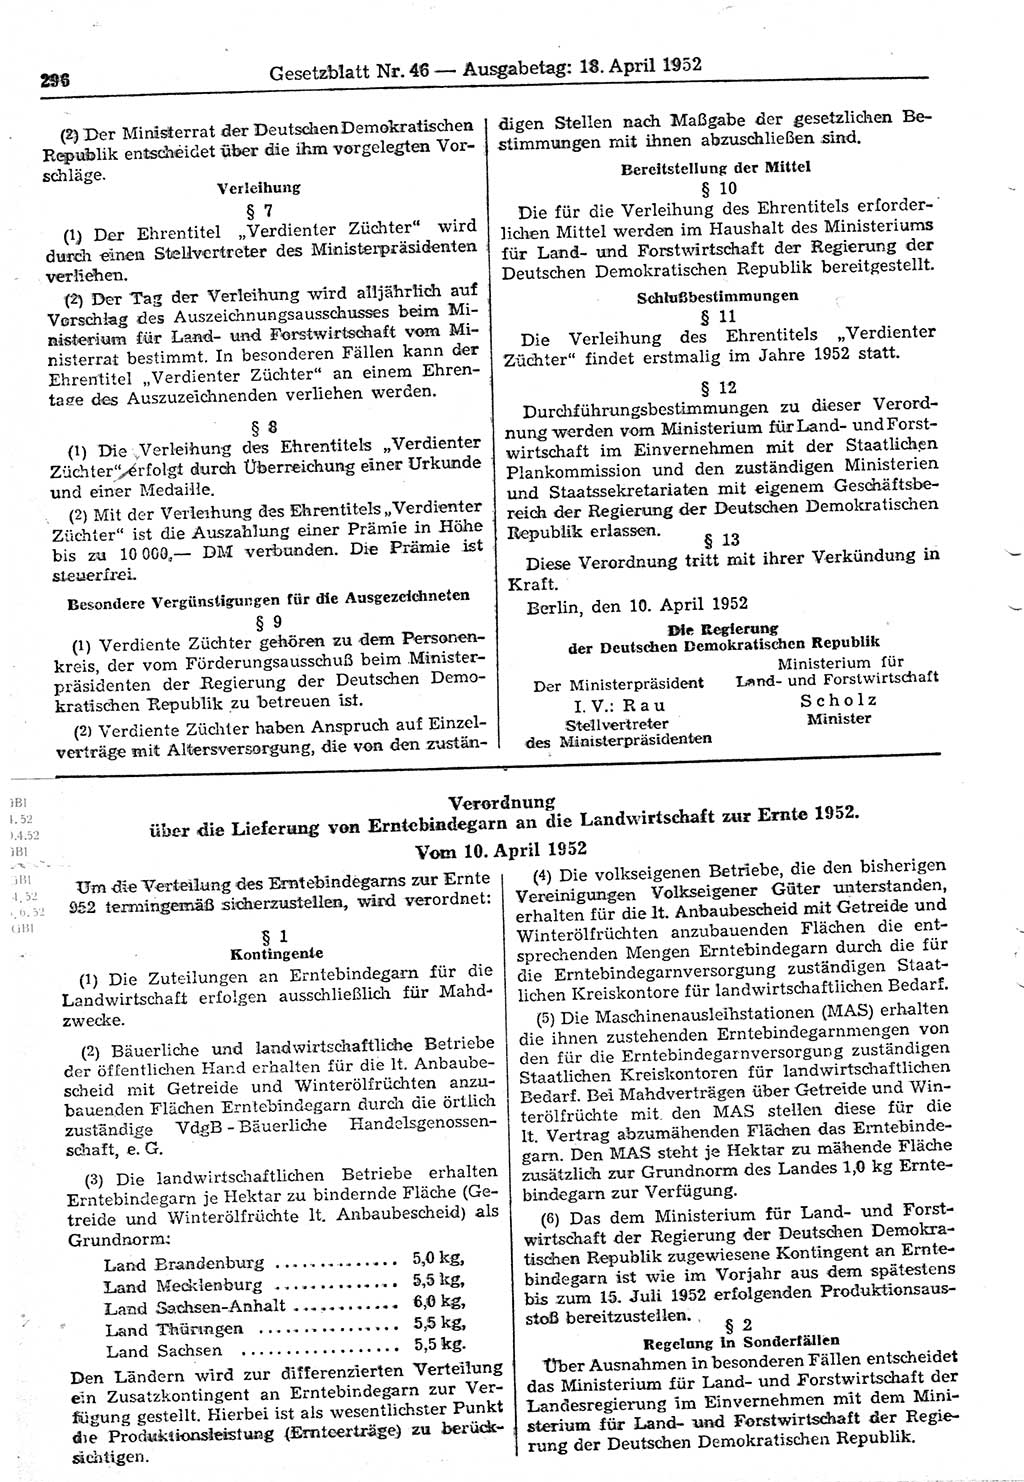 Gesetzblatt (GBl.) der Deutschen Demokratischen Republik (DDR) 1952, Seite 296 (GBl. DDR 1952, S. 296)